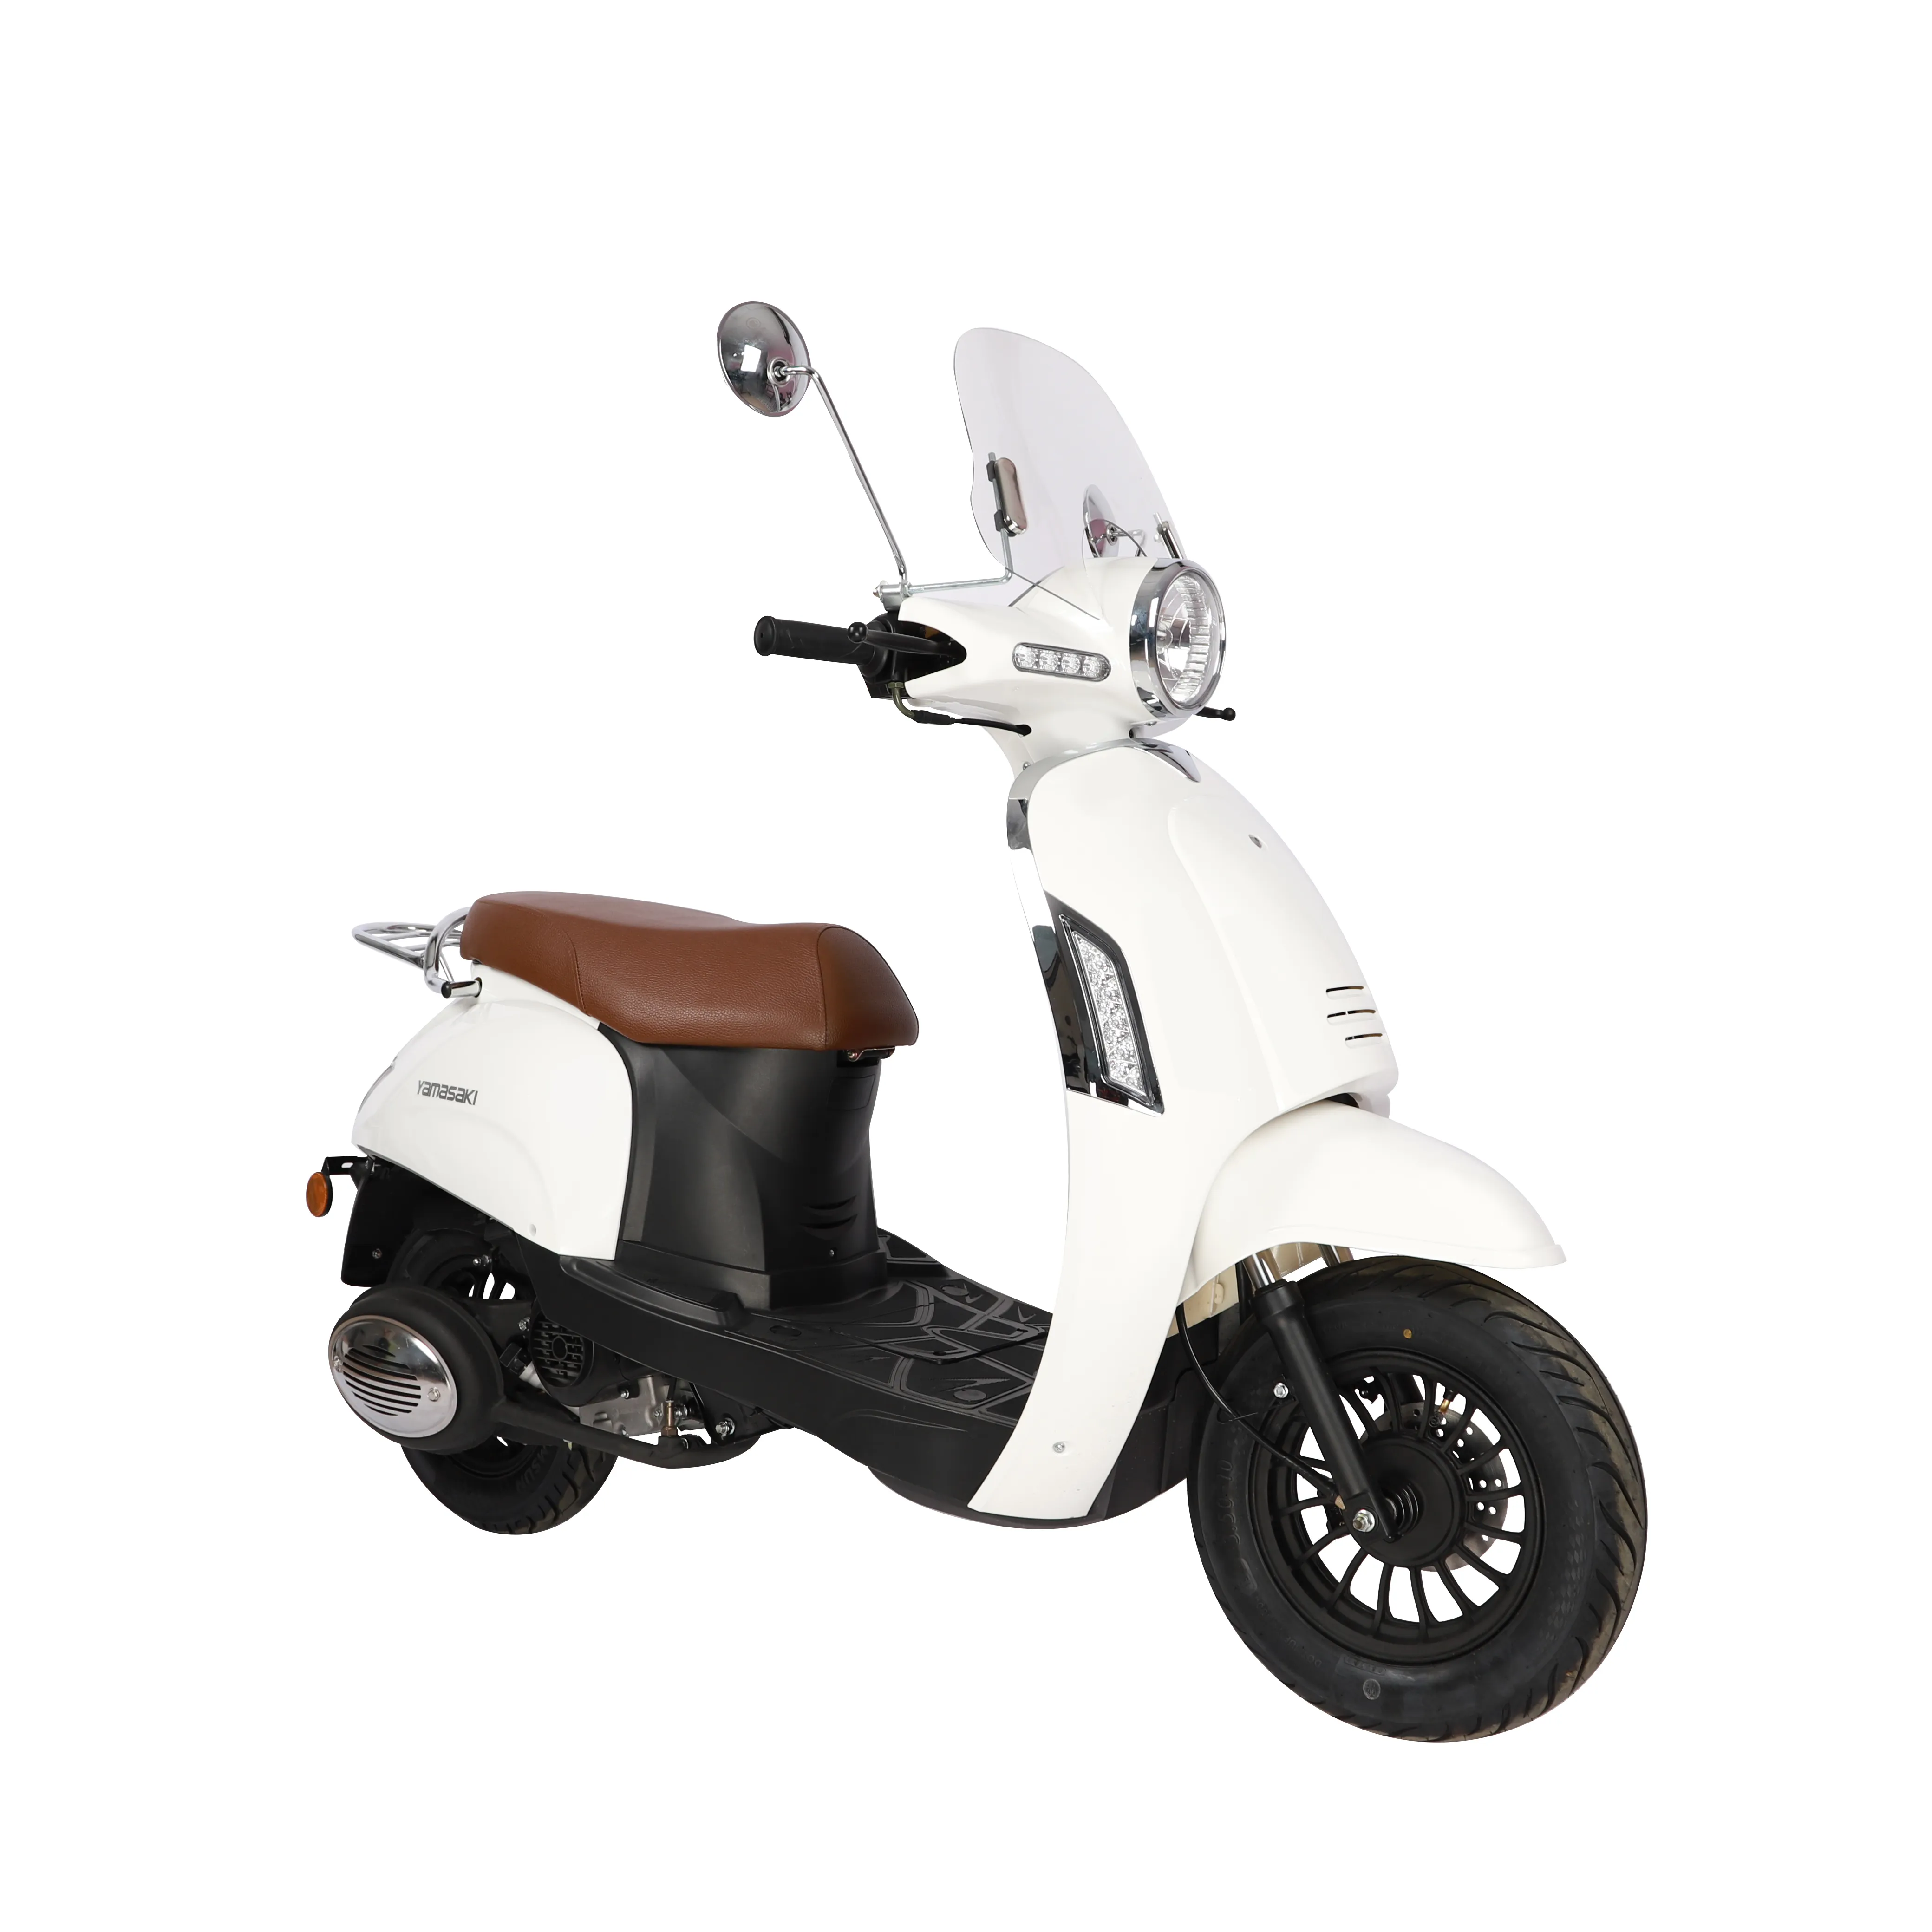 Migliore vendita CEE/Euro4 Gas scooter citycoco moto 50CC